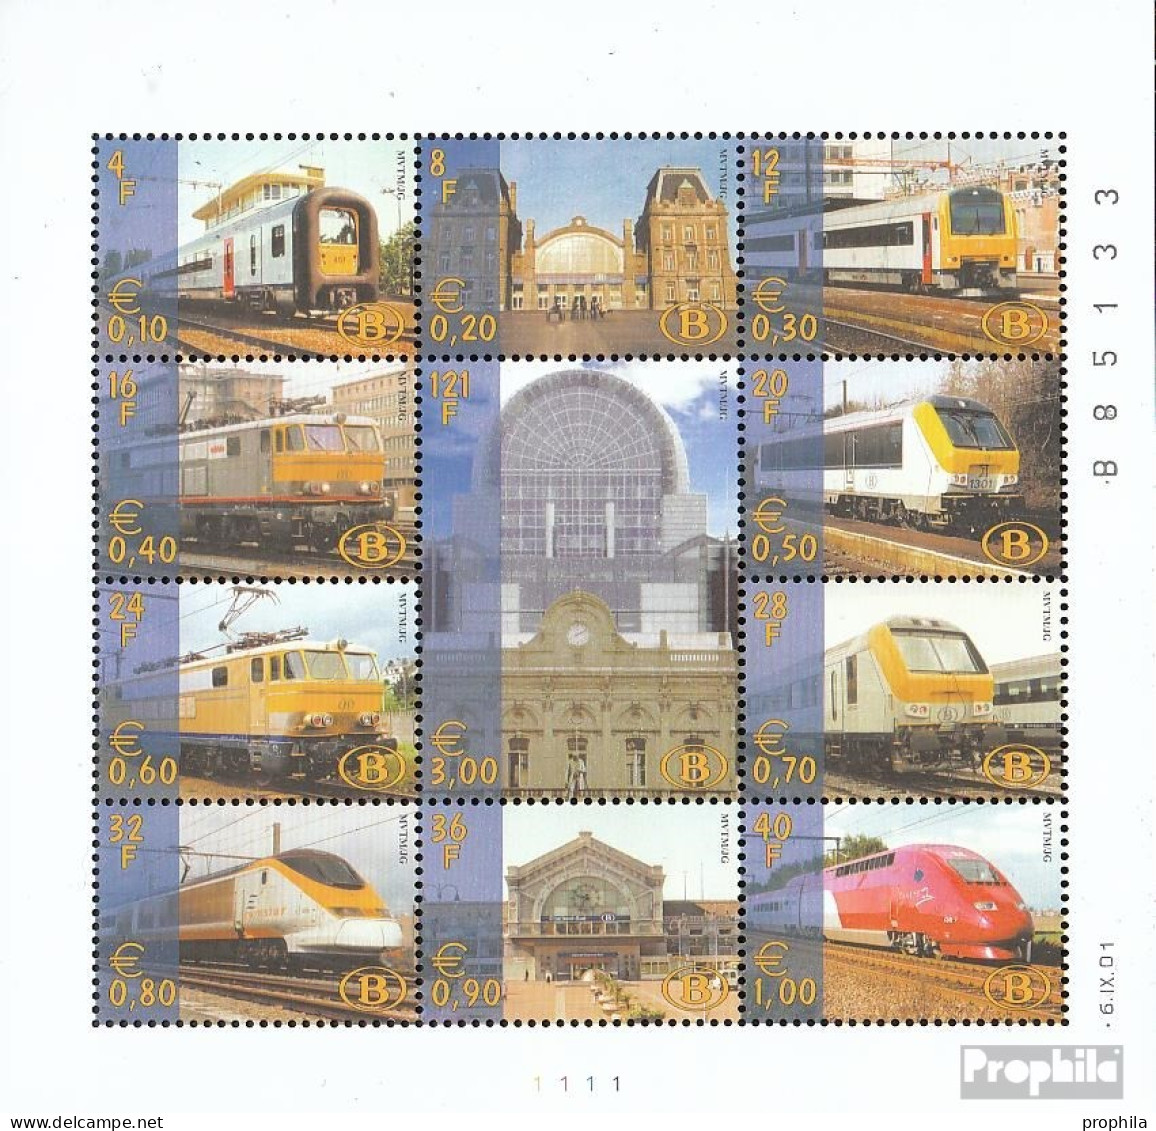 Belgien E Kleinbogen1/2001 (kompl.Ausg.) Postfrisch 2001 Eisenbahnmarke Privatausgabe - 1996-2013 Vignetten [TRV]